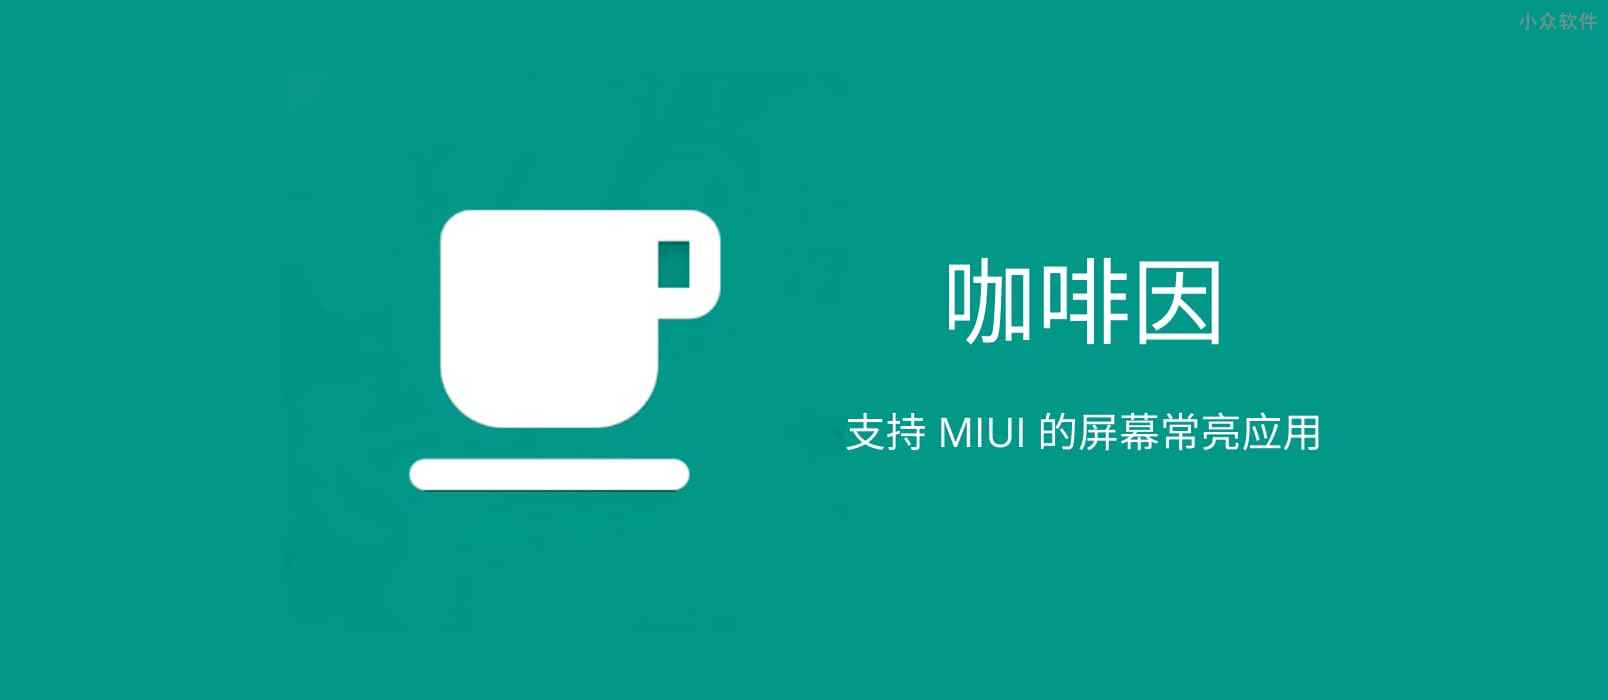 咖啡因 – 保持 Android 屏幕常亮，支持 MIUI 系统